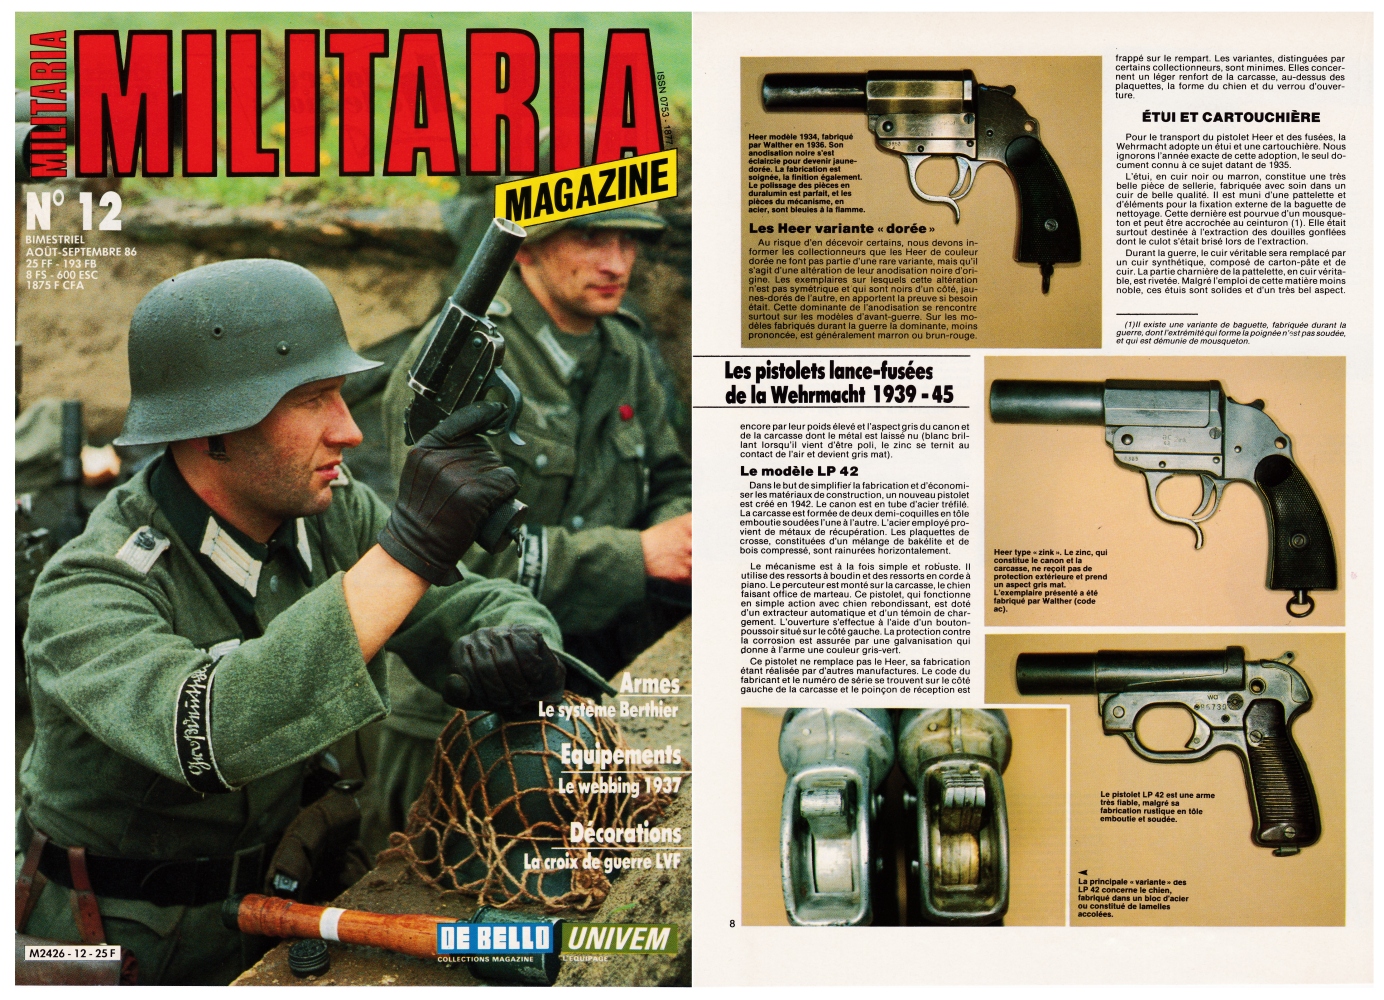 Les pistolets lance-fusées de la Wehrmacht ont fait l'objet d'une publication sur 6 pages dans le magazine Militaria N°12 (août-septembre 1986).